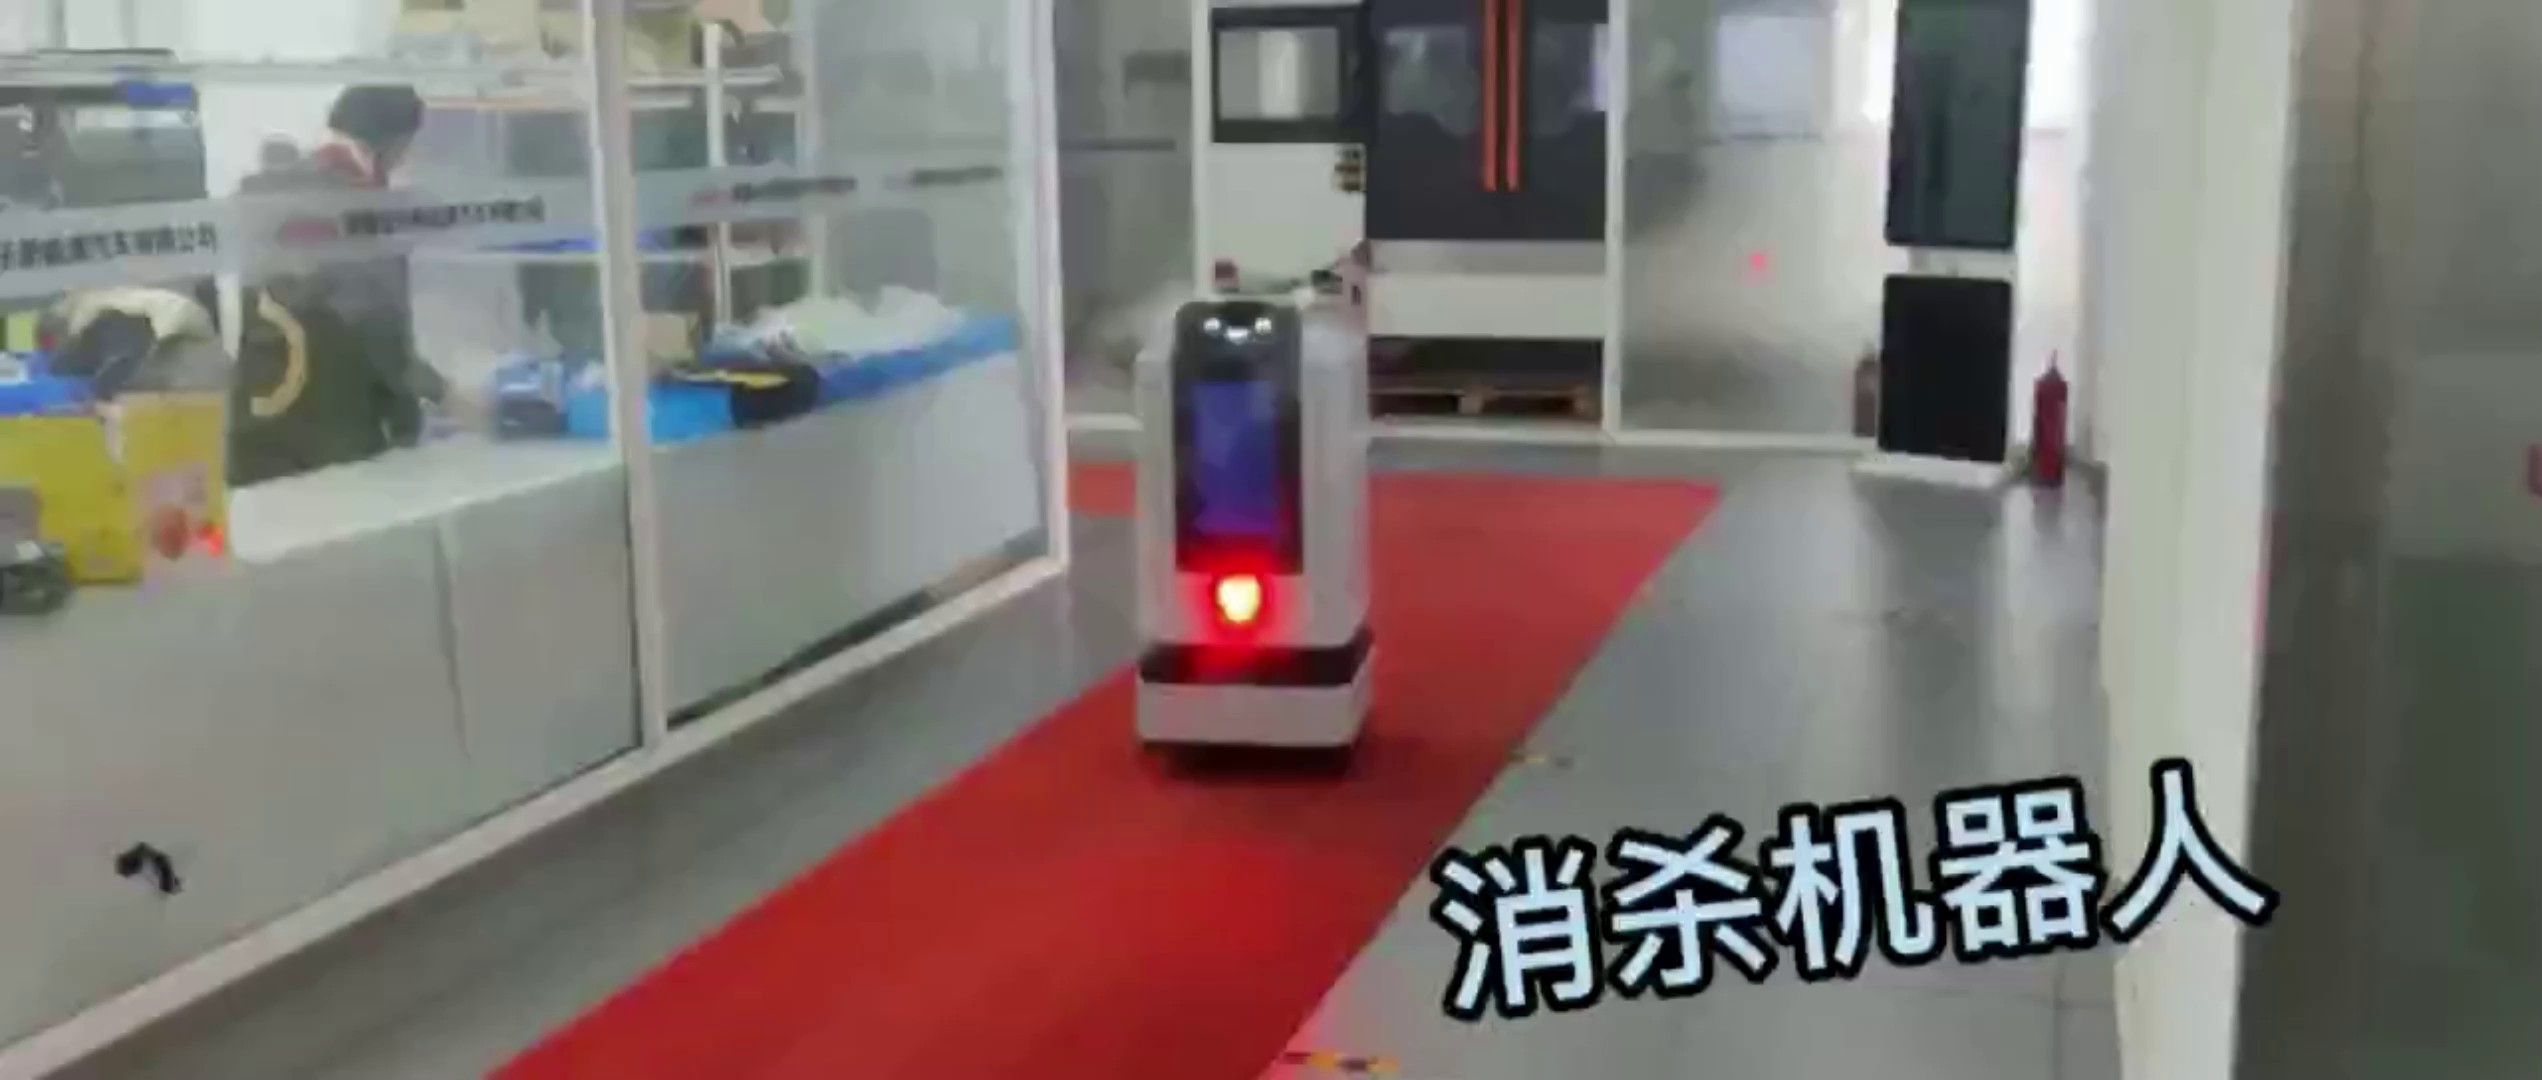 北京网联机器人哪家便宜,机器人